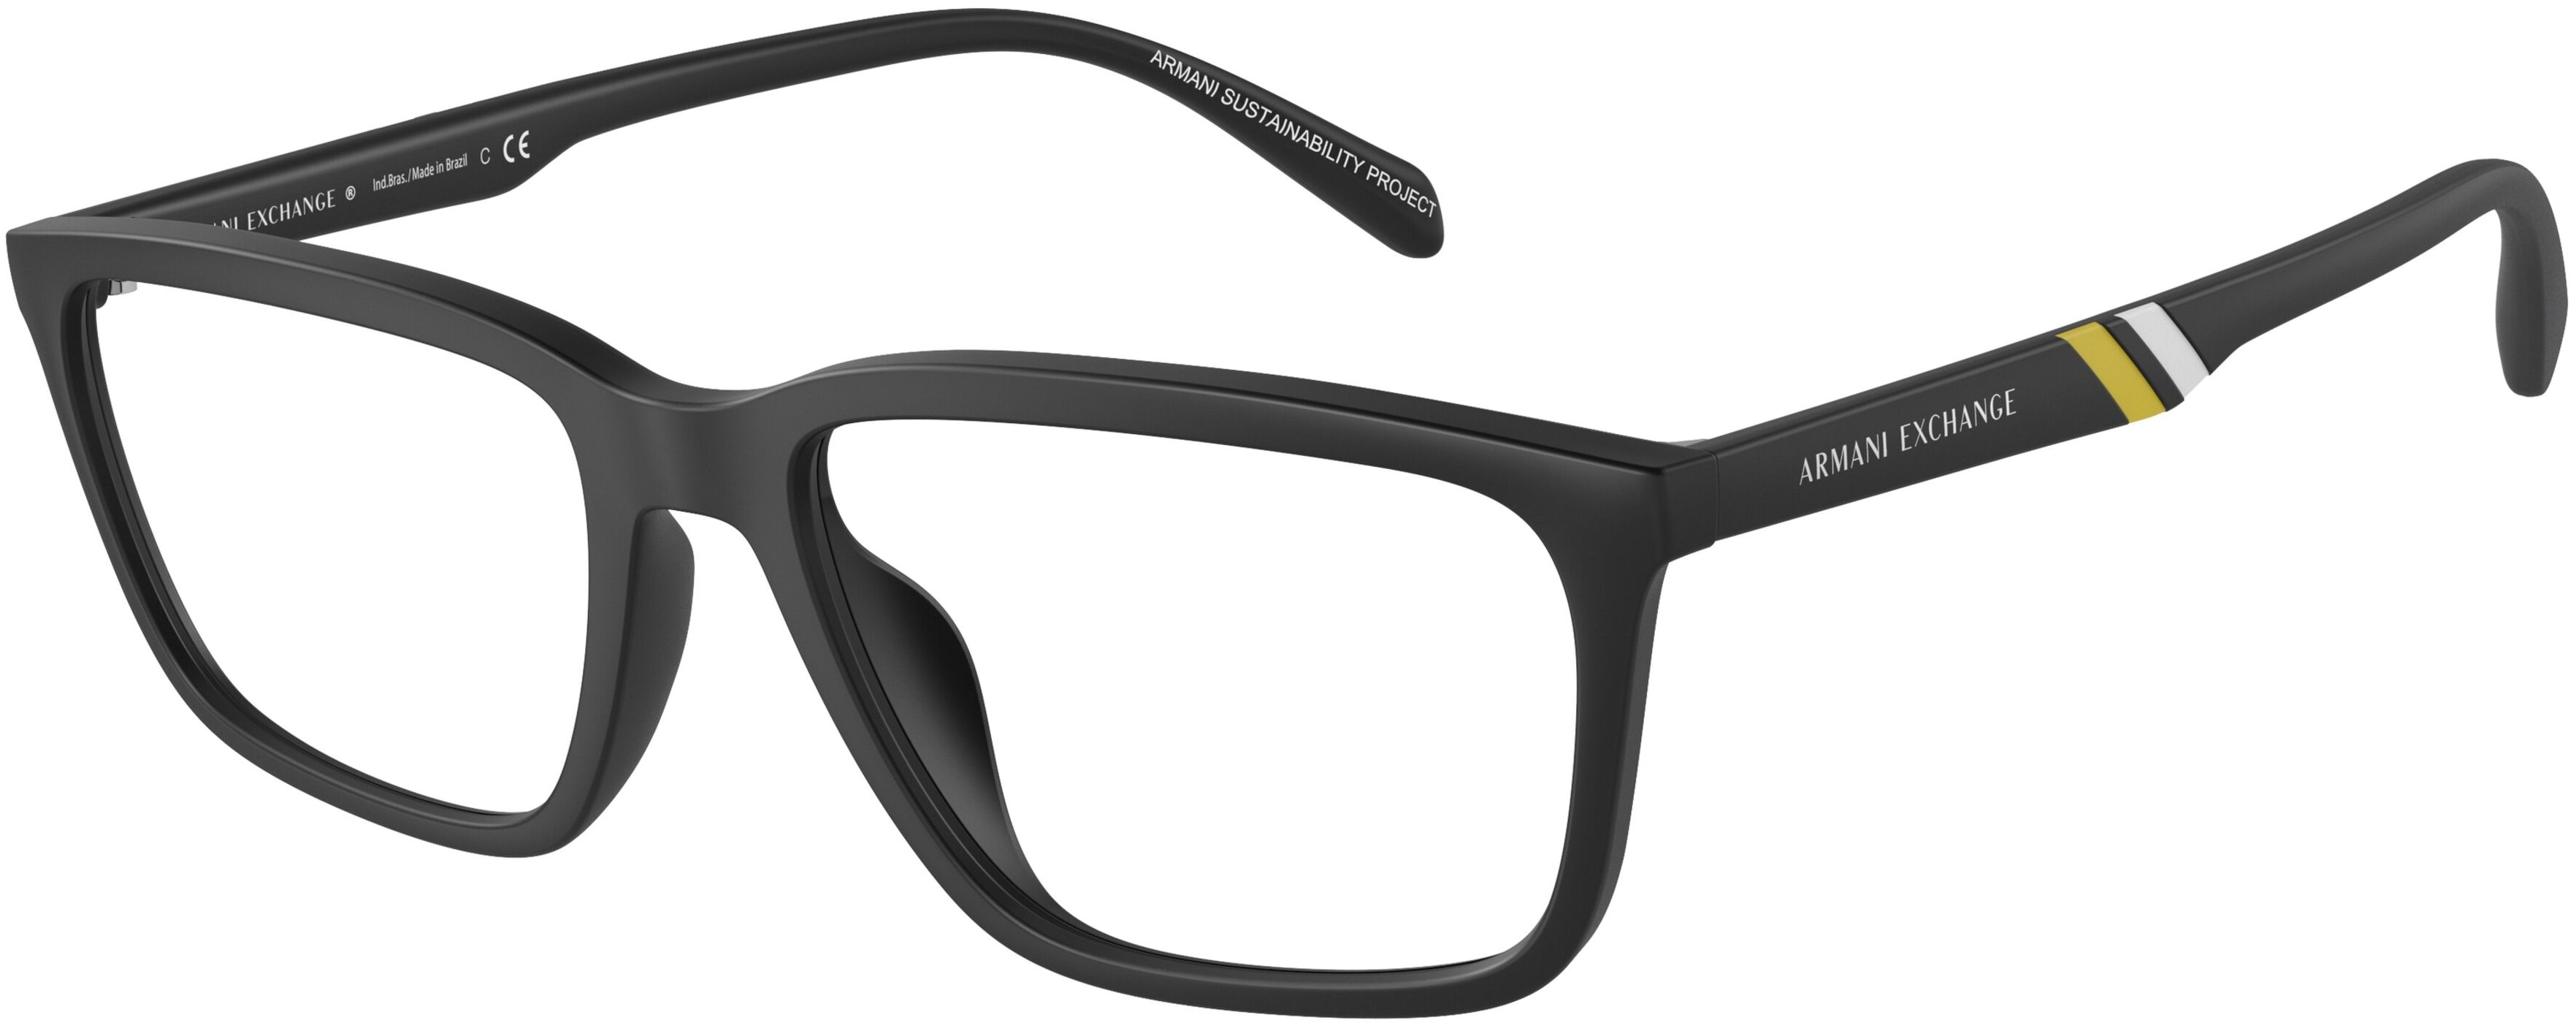 Dioptrické brýle Armani Exchange model 3089U, barva obruby černá mat, stranice černá mat, kód barevné varianty 8078. 